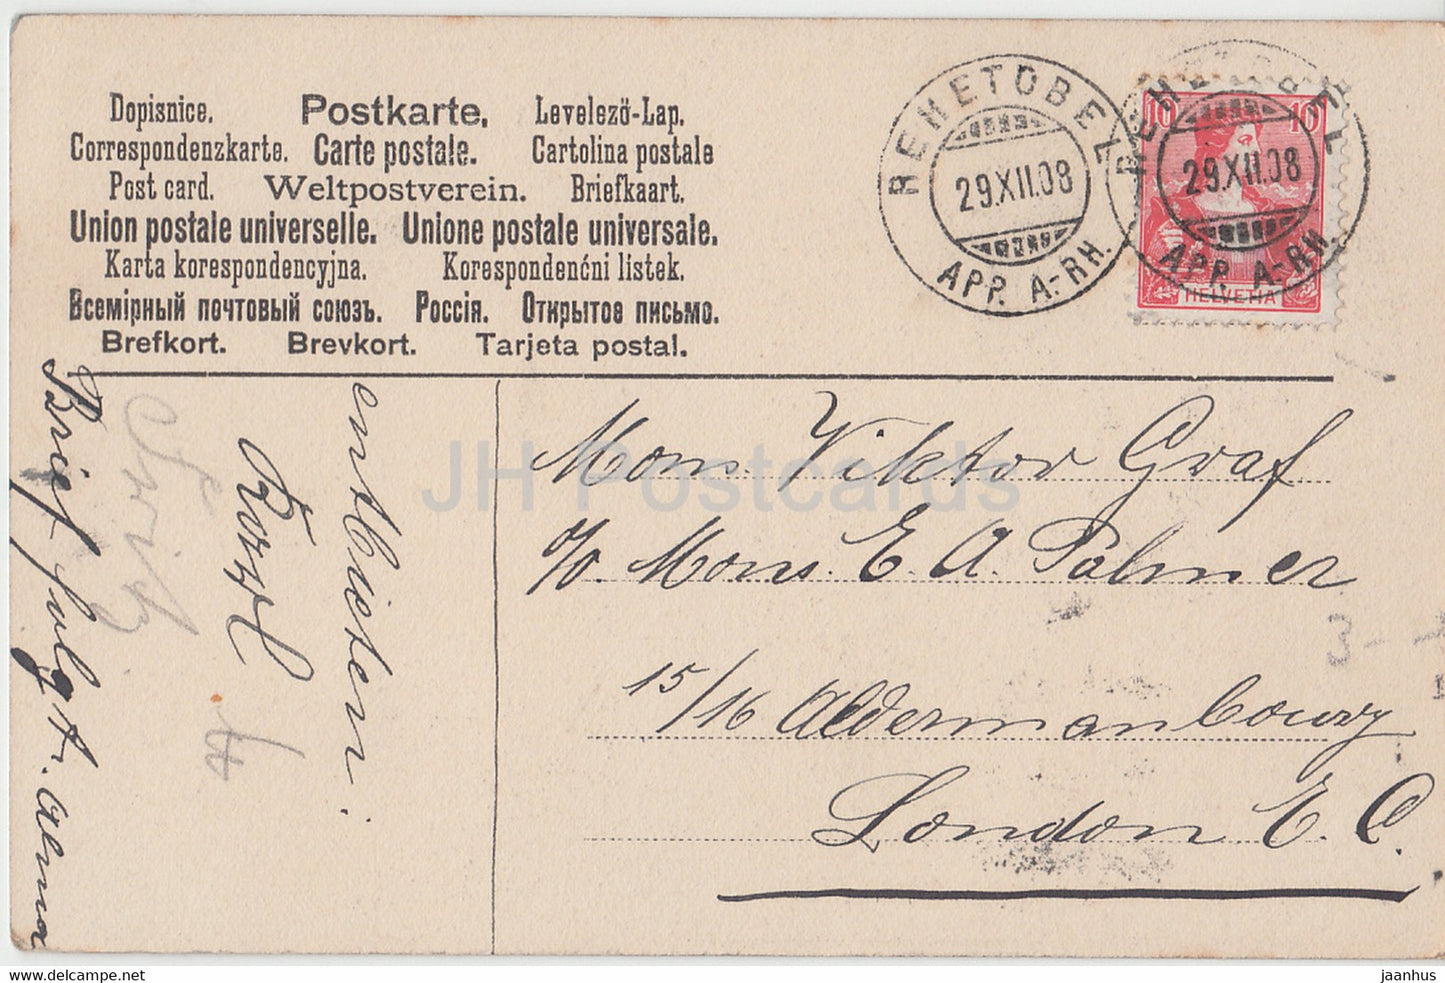 New Year Greeting Card - Herzlichen Gluckwunsch zum Neuen Jahre - children - old postcard - 1908 - Germany - used